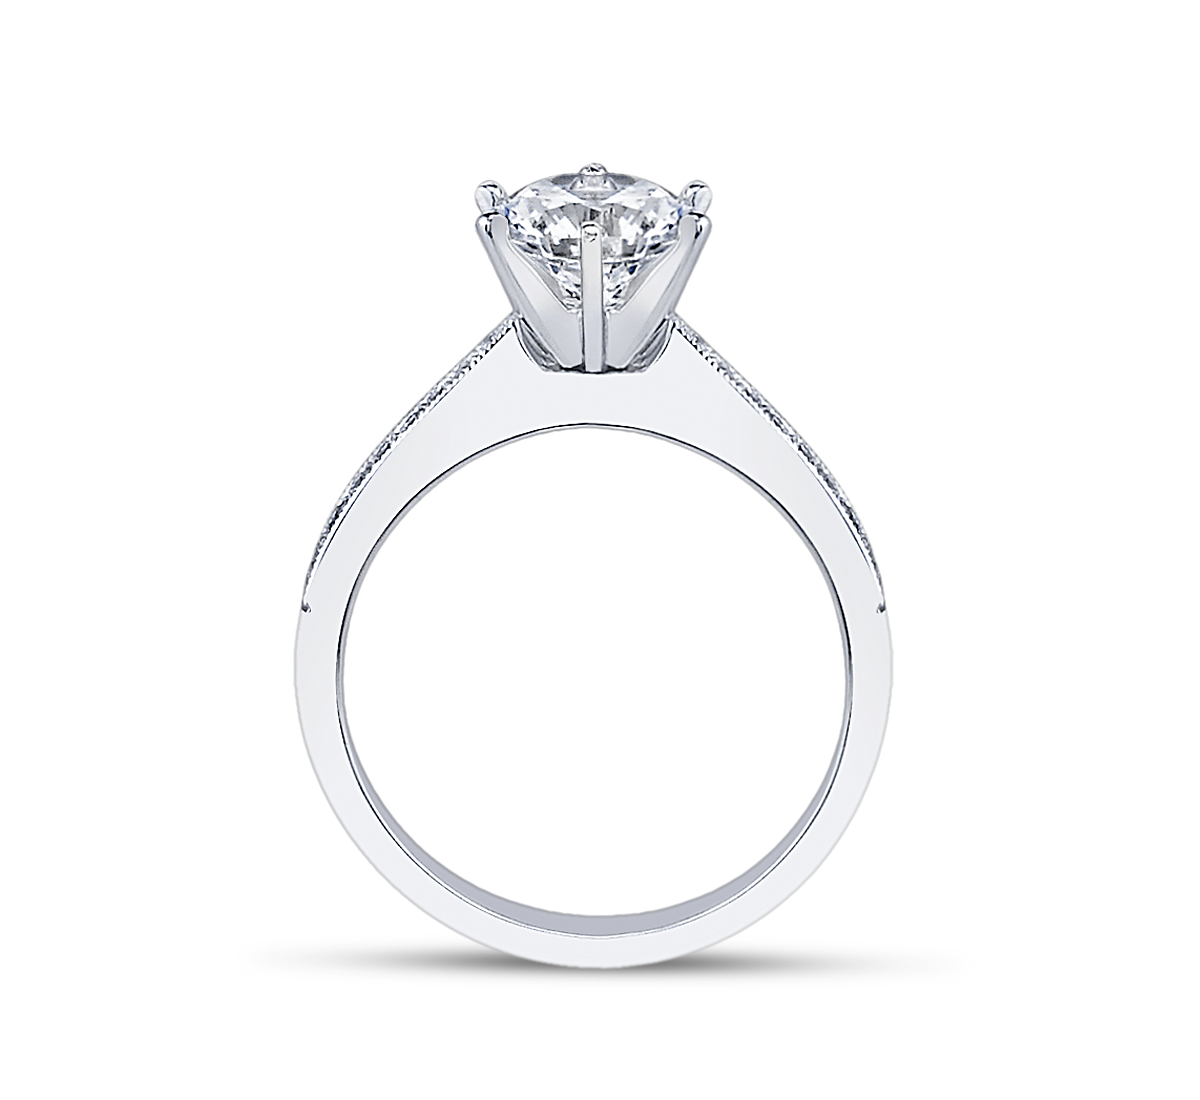 Ladies Platinum Diamond Engagement Ring